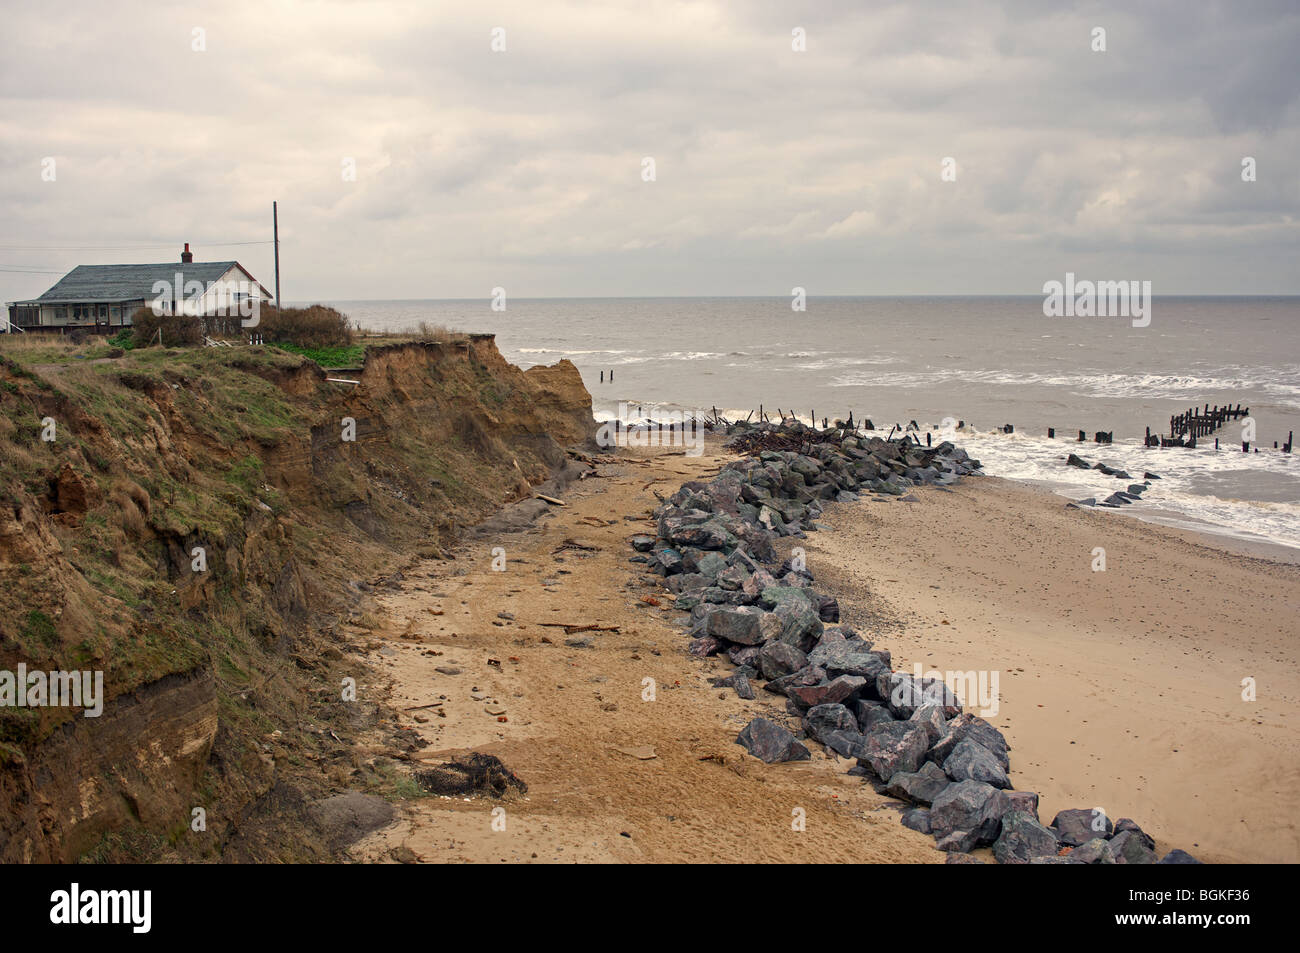 Effects of coastal erosion on the North Norfolk coast, UK. Stock Photo